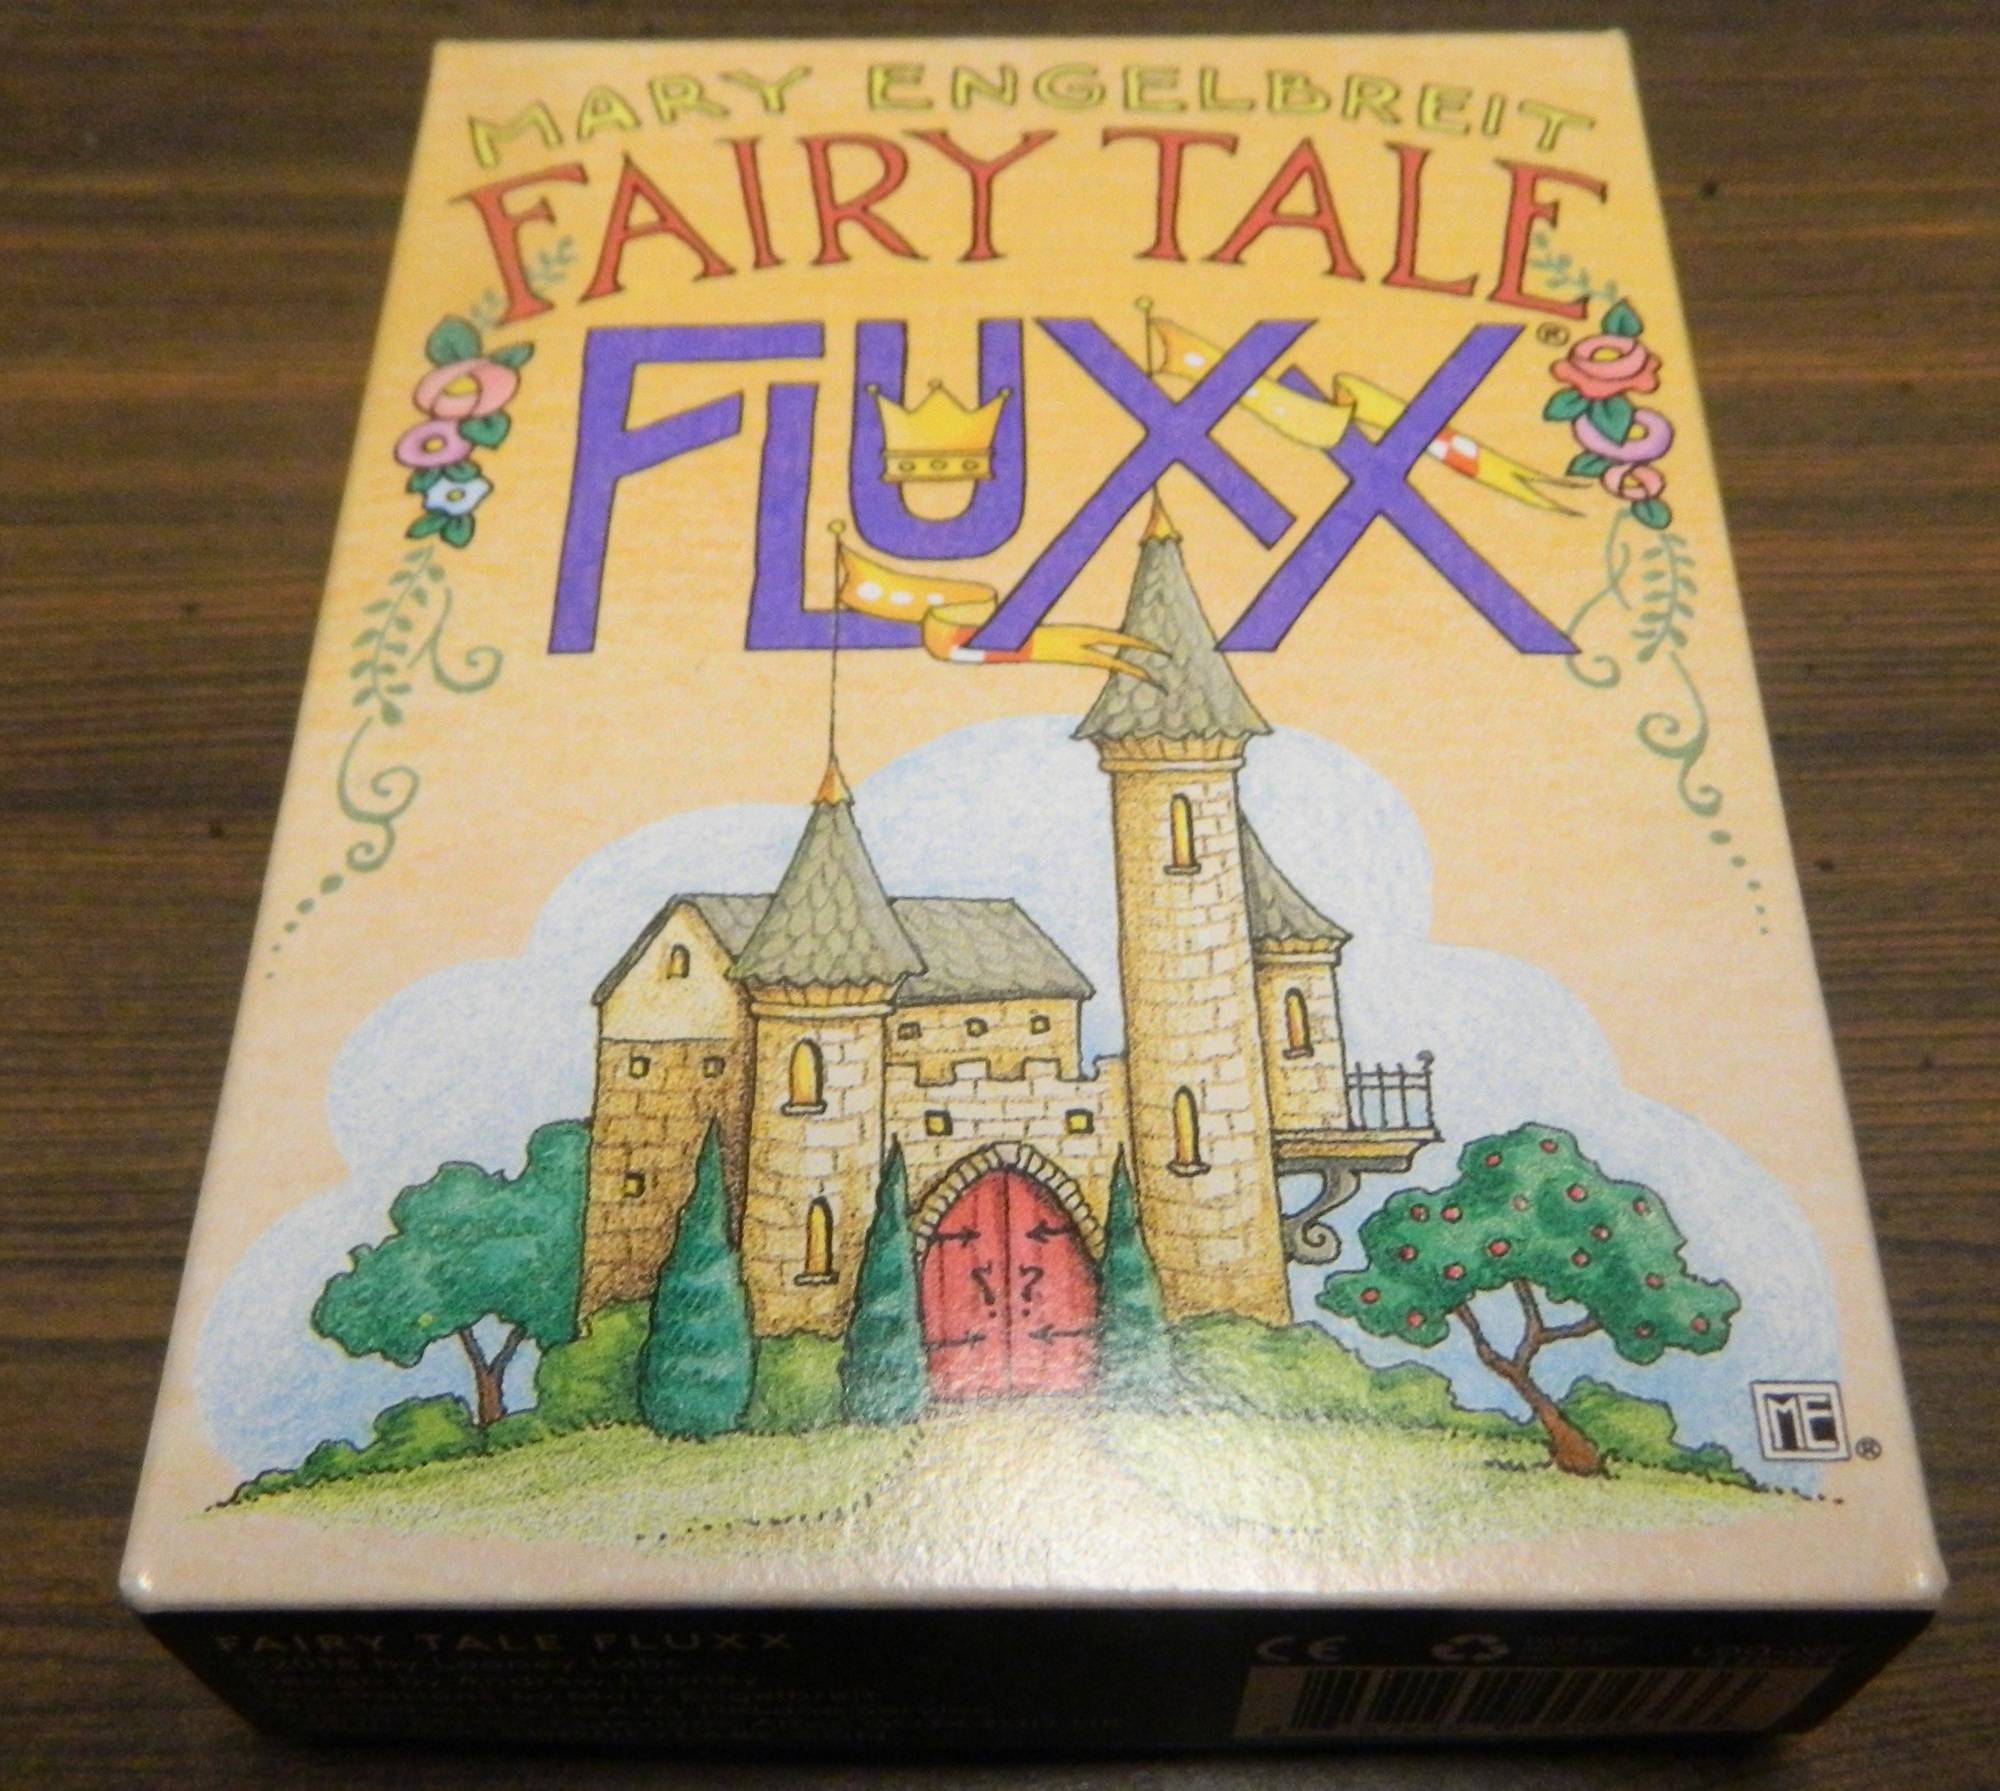 Box for Fairy Tale Fluxx